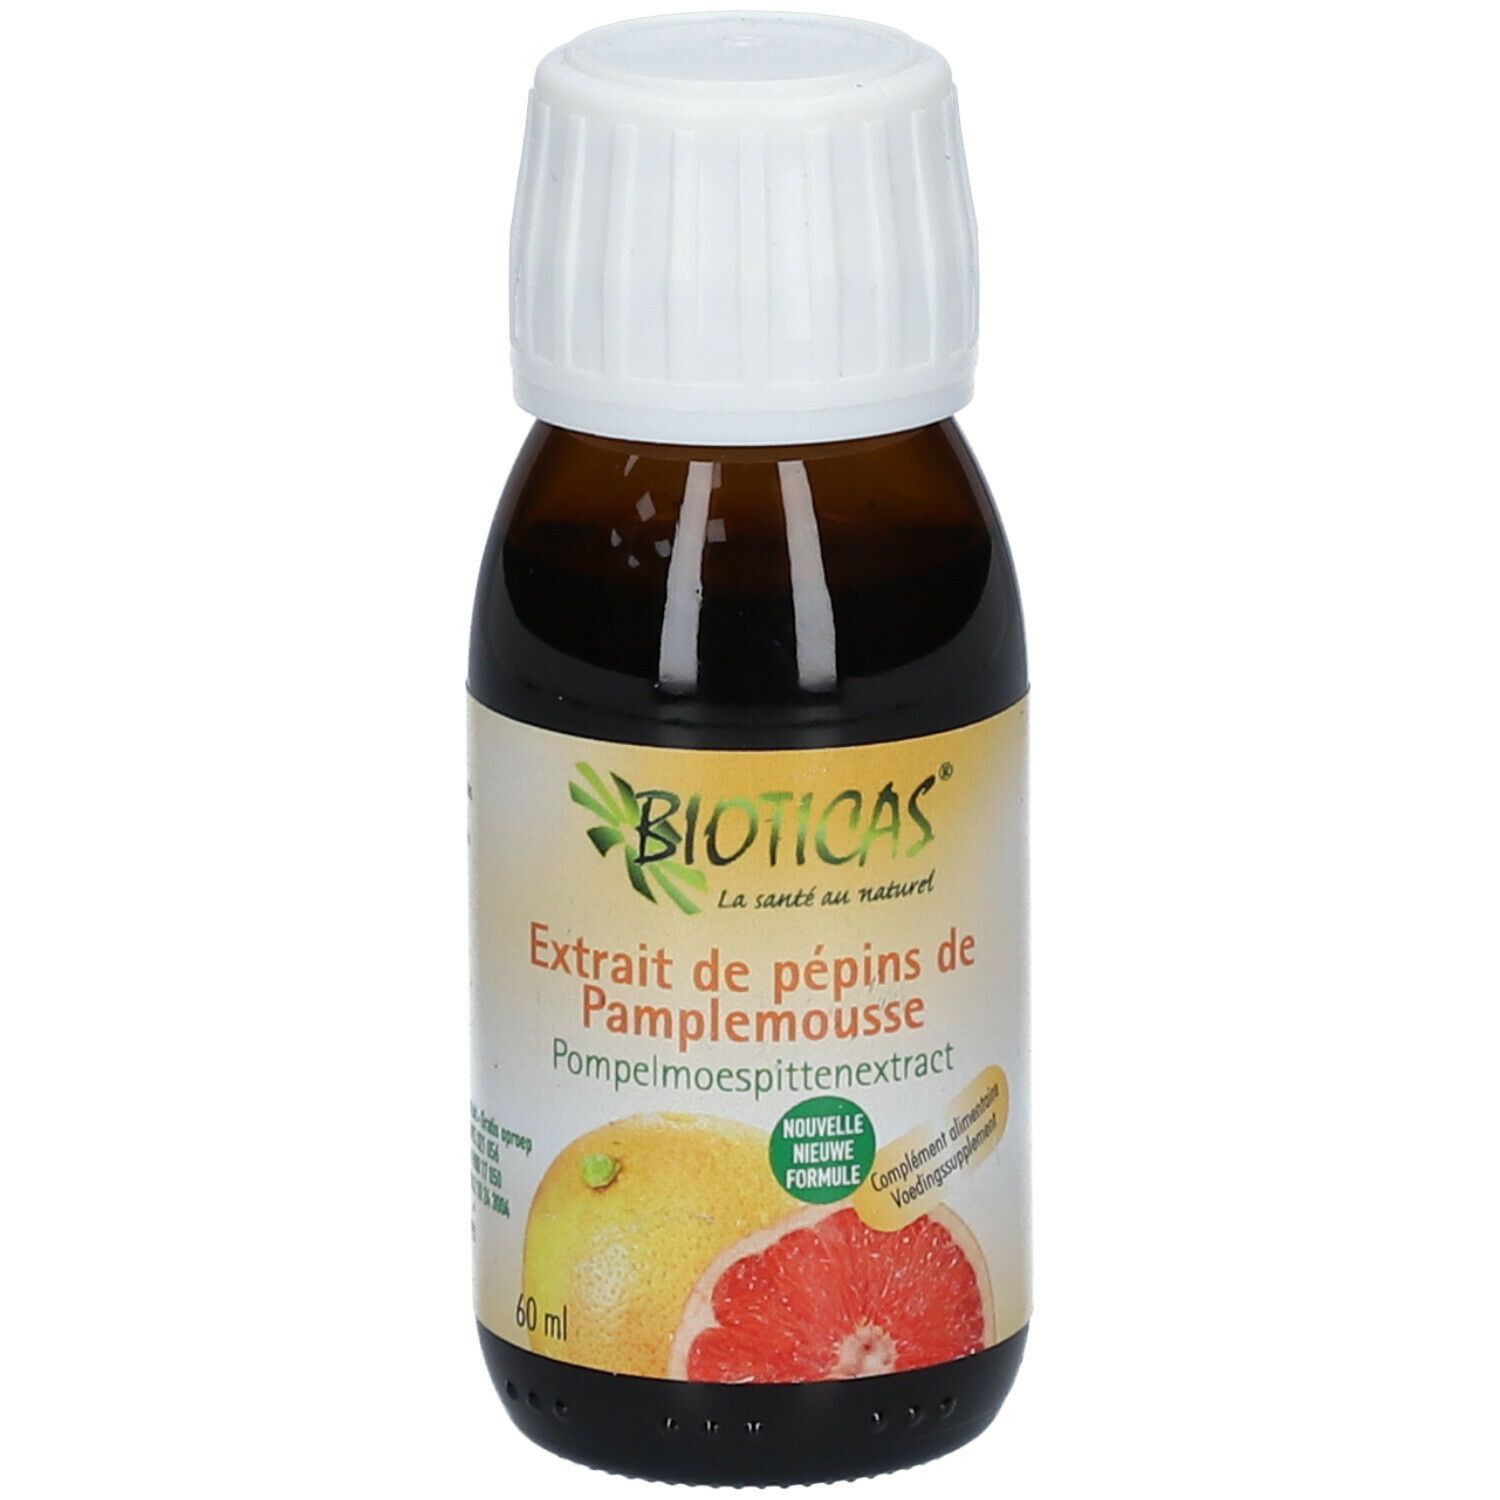 Bioticas® Extrait pépins de pamplemousse